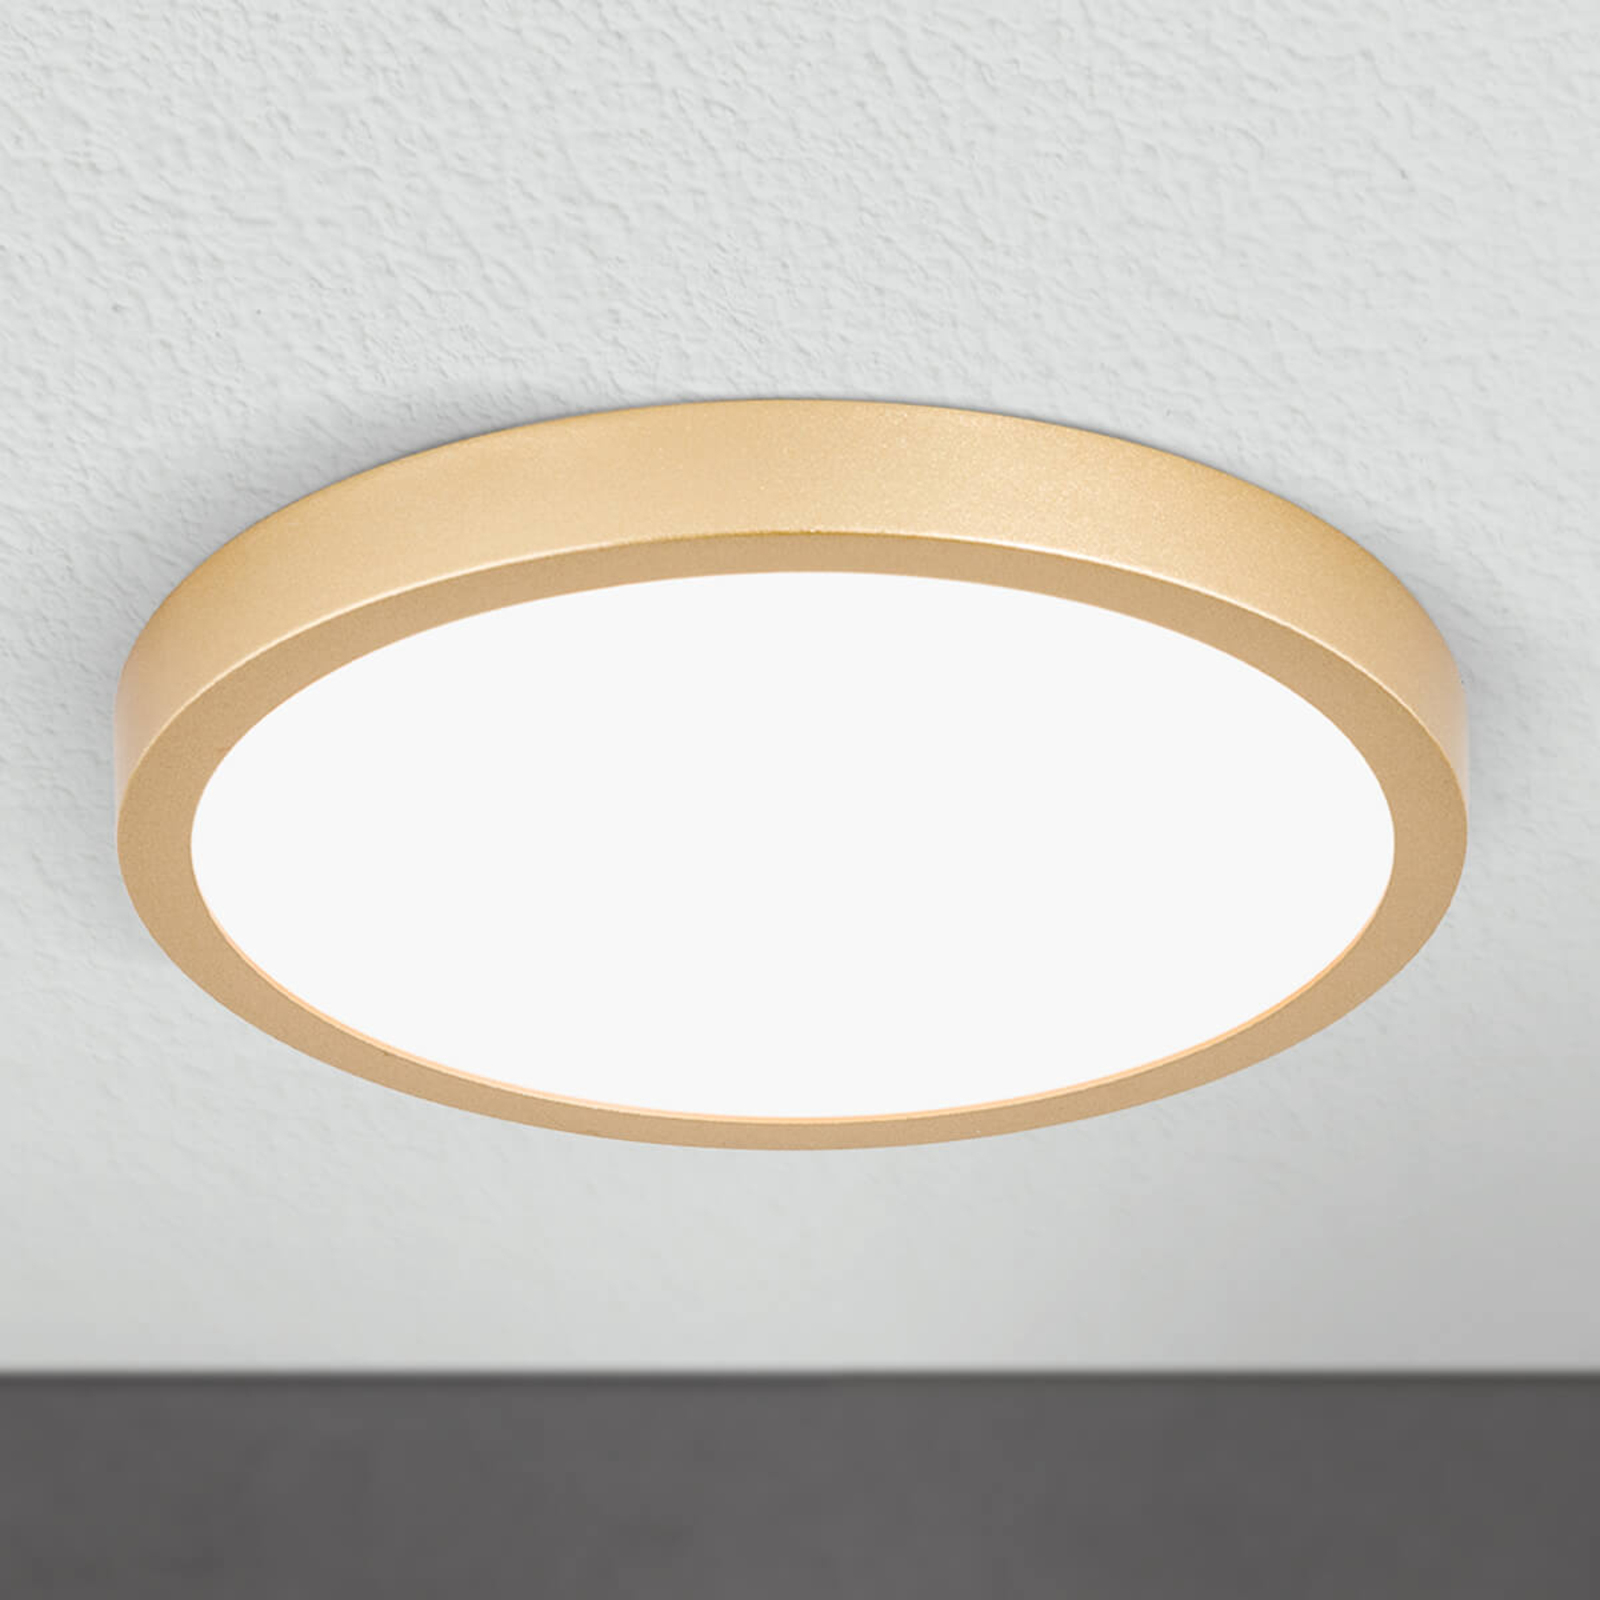 LED stropna svjetiljka Vika, okrugla, mat zlatna, Ø 23cm